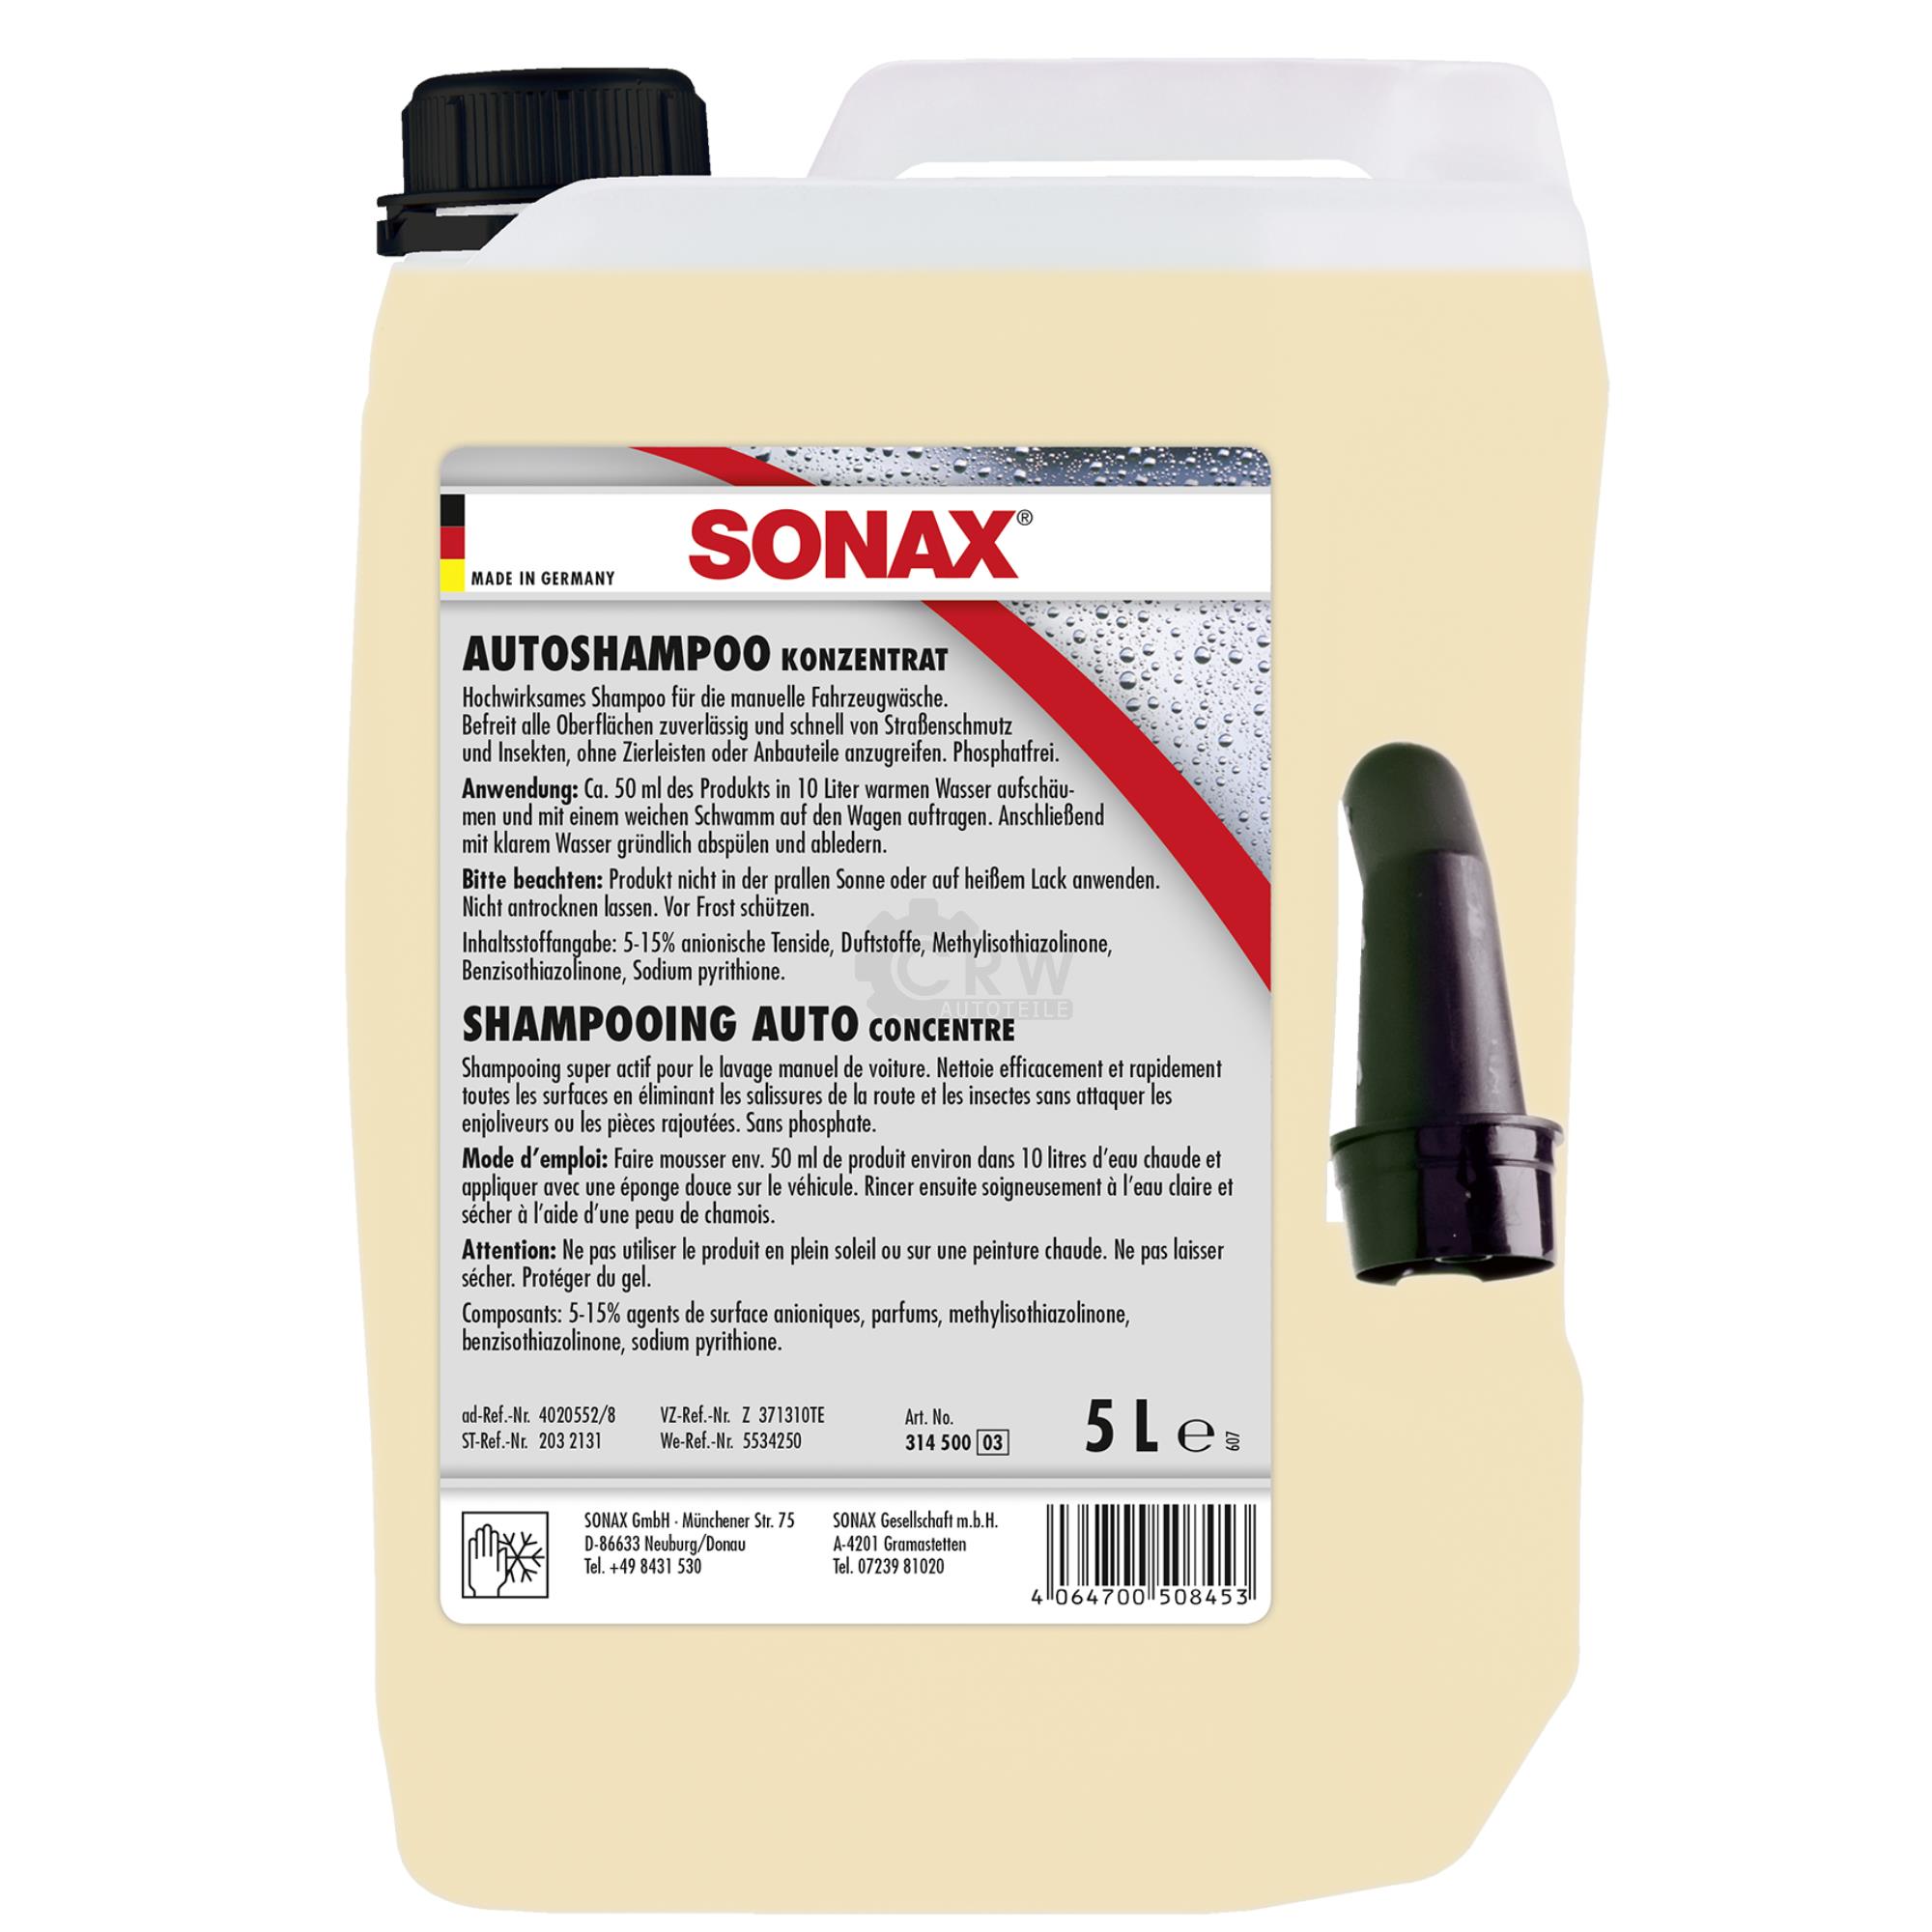 SONAX 03145000 AutoShampoo Konzentrat Phosphatfrei pH-neutral 5 Liter